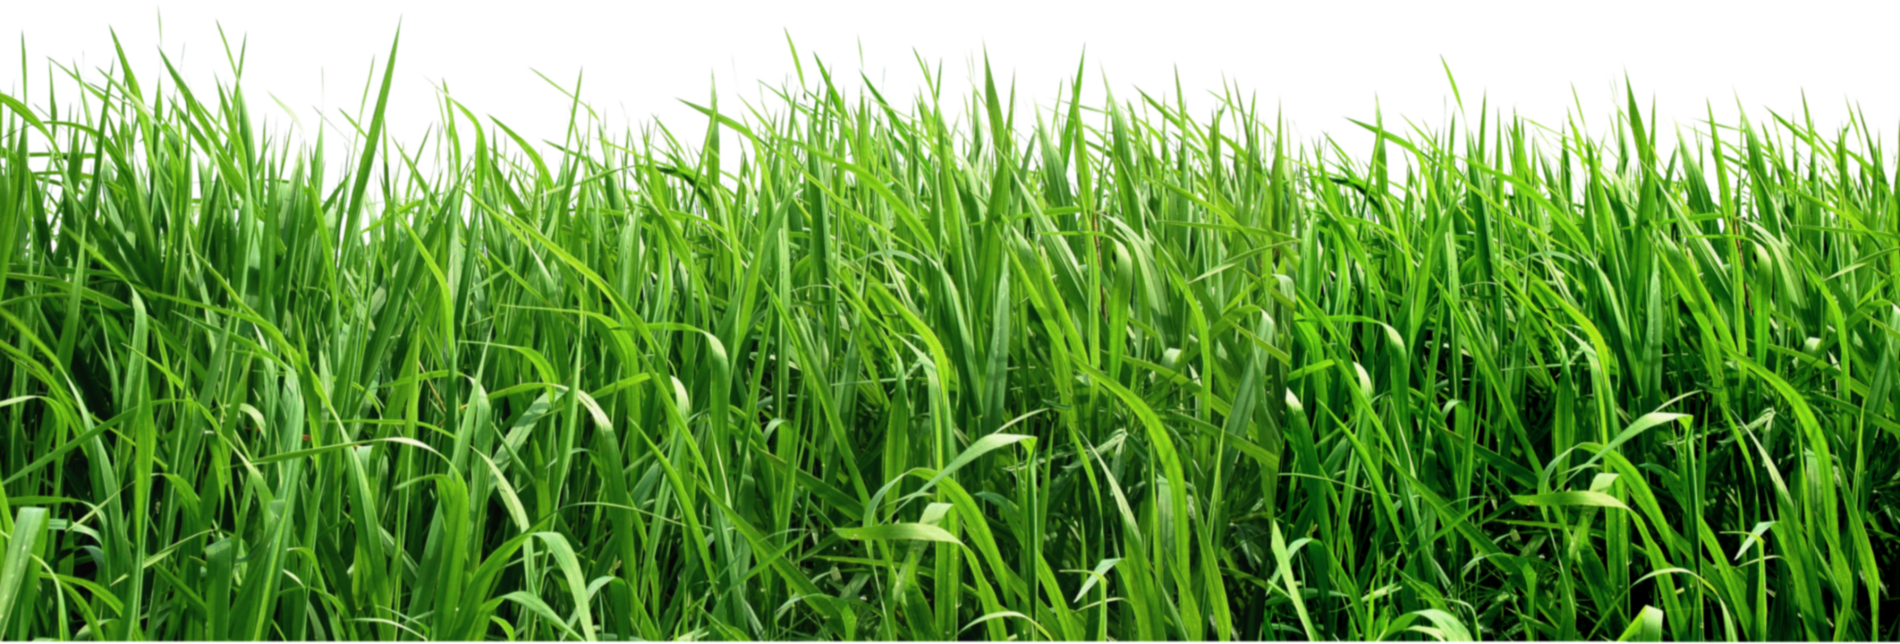 swamp clipart green grass